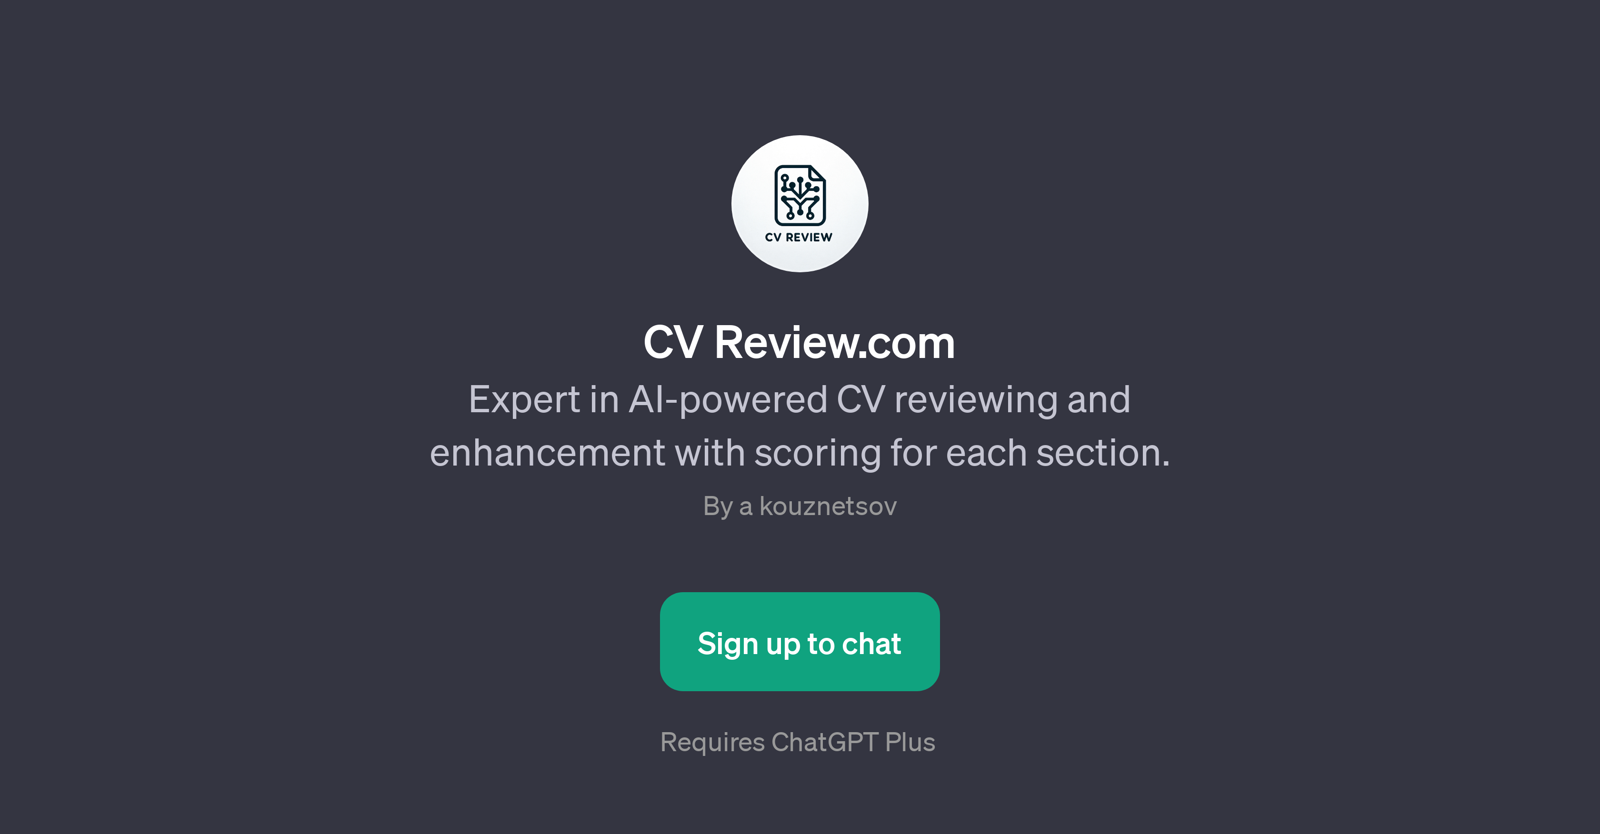 CV Review.com website